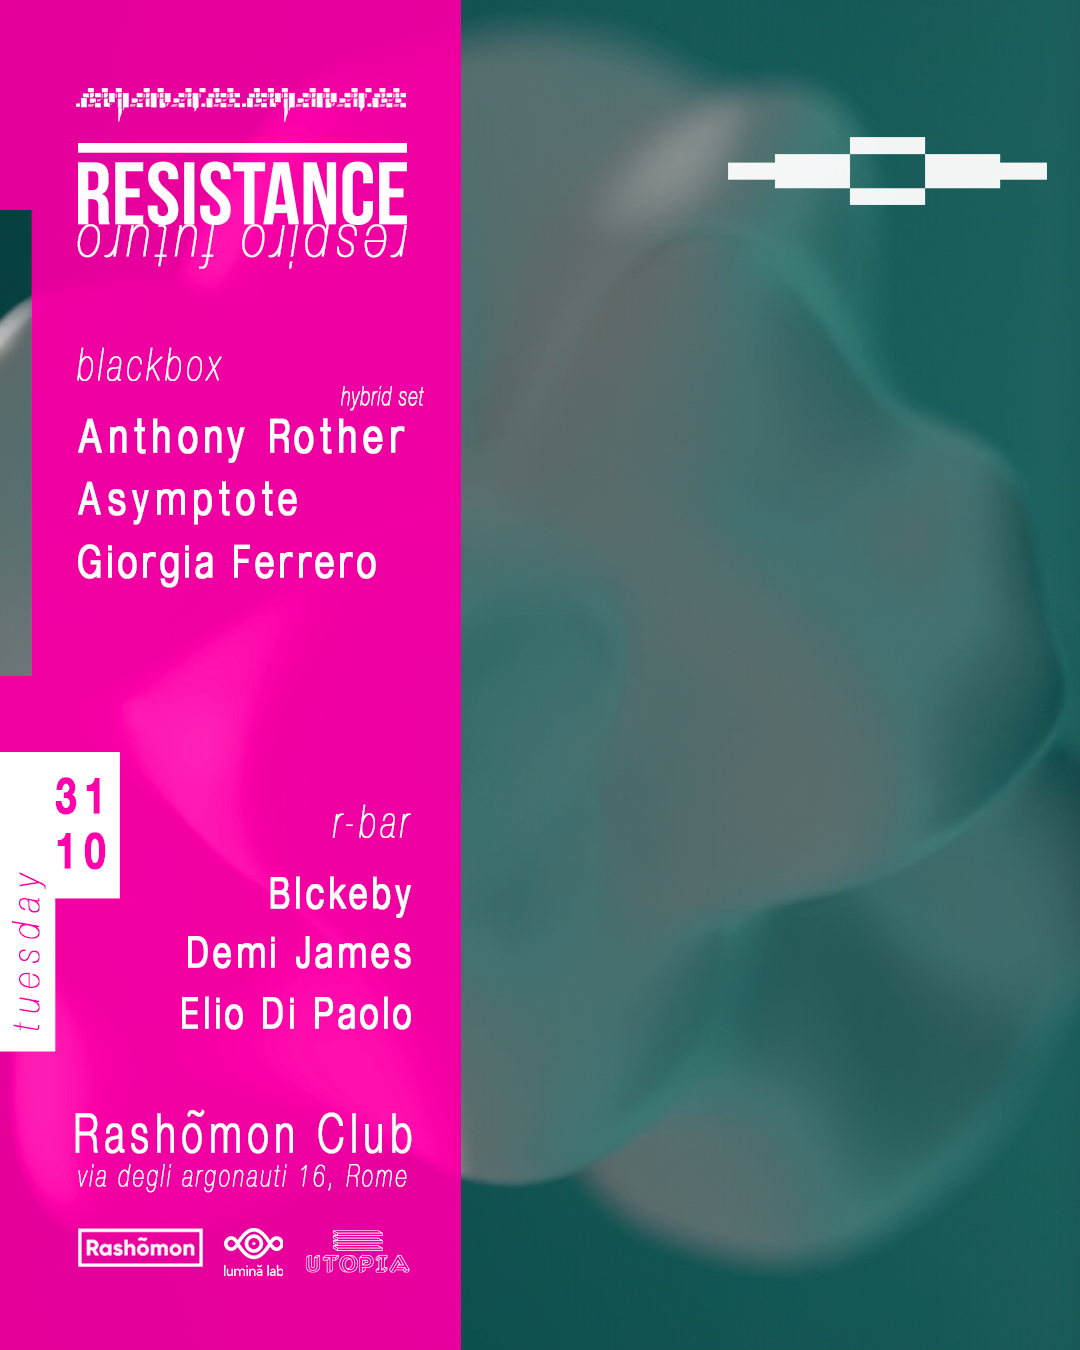 Resistance: Anthony Rother (Hybrid set), Asymptote, Giorgia Ferrero - フライヤー裏